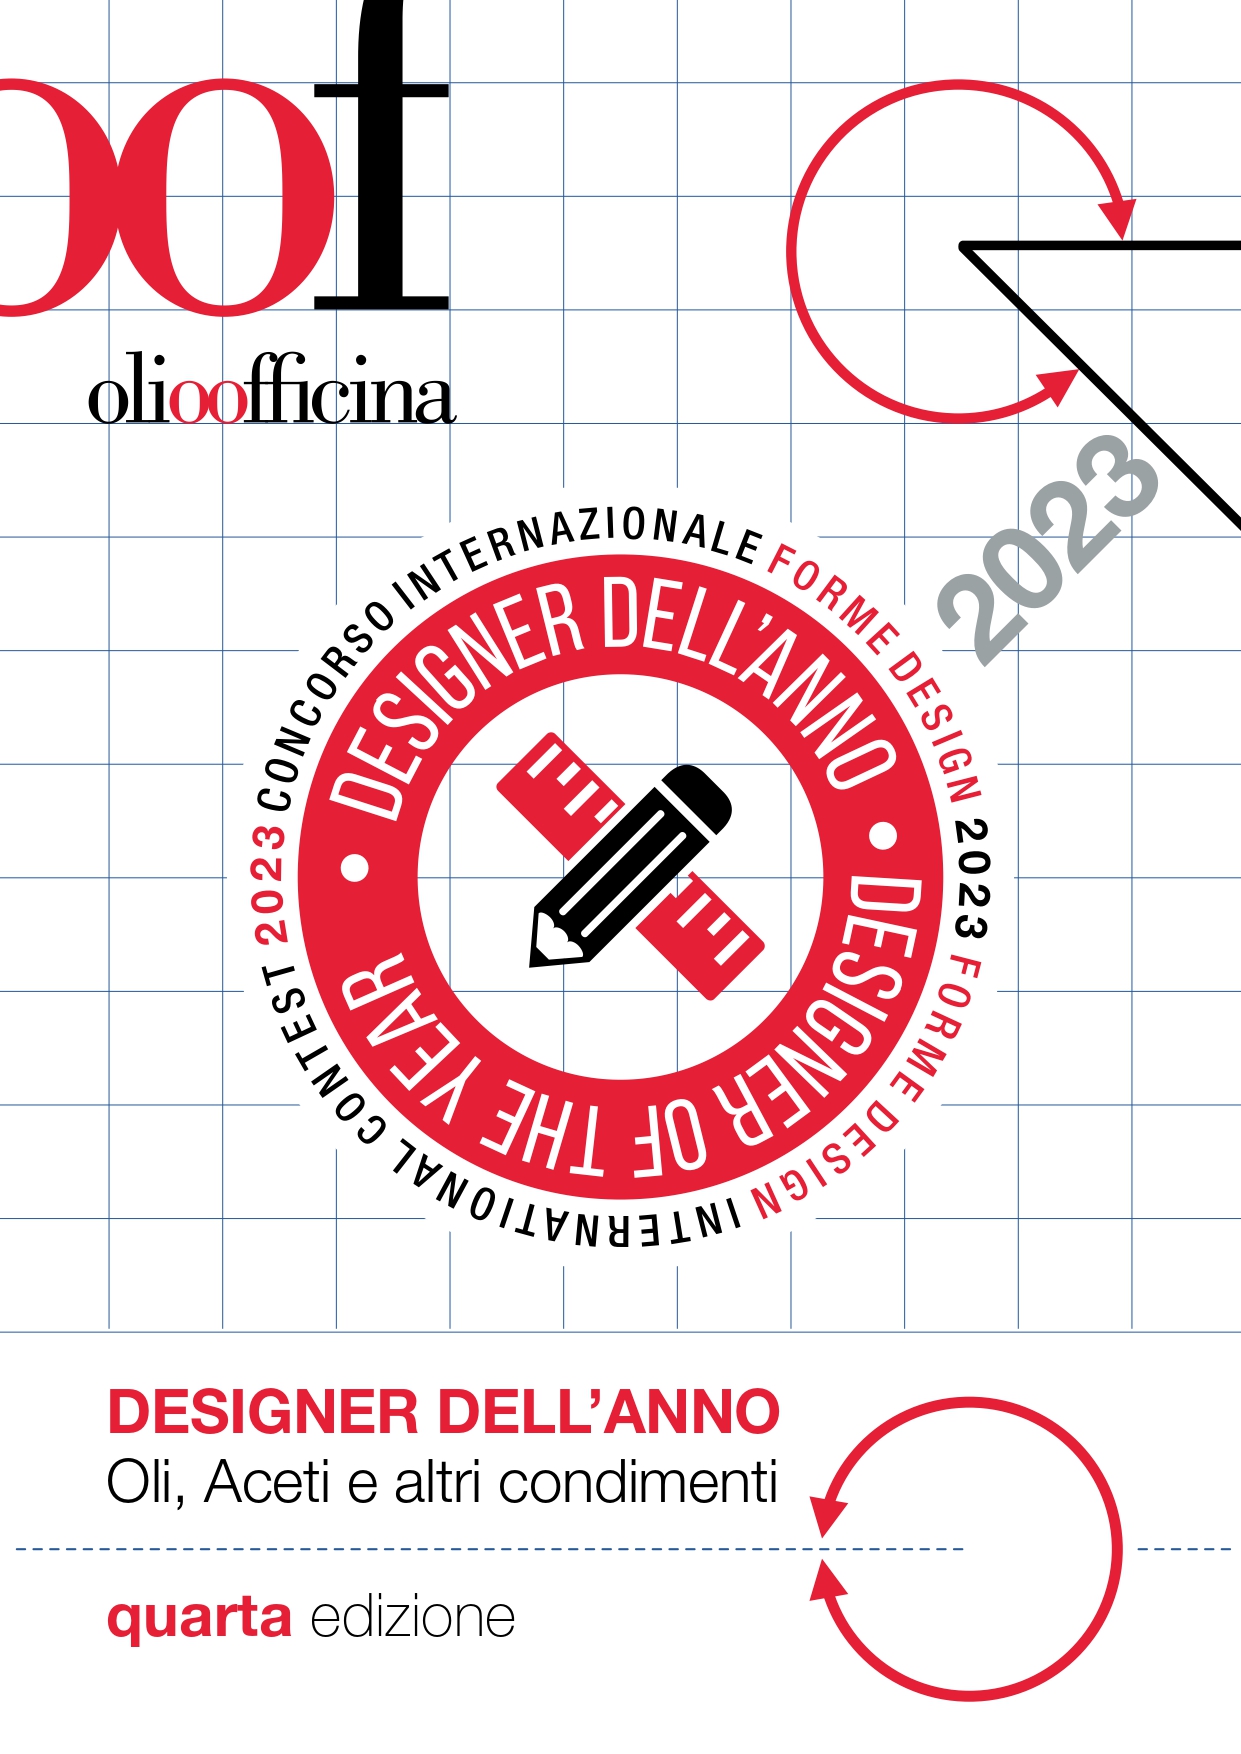 Alla quarta edizione il contest Forme Design – Designer dell’anno